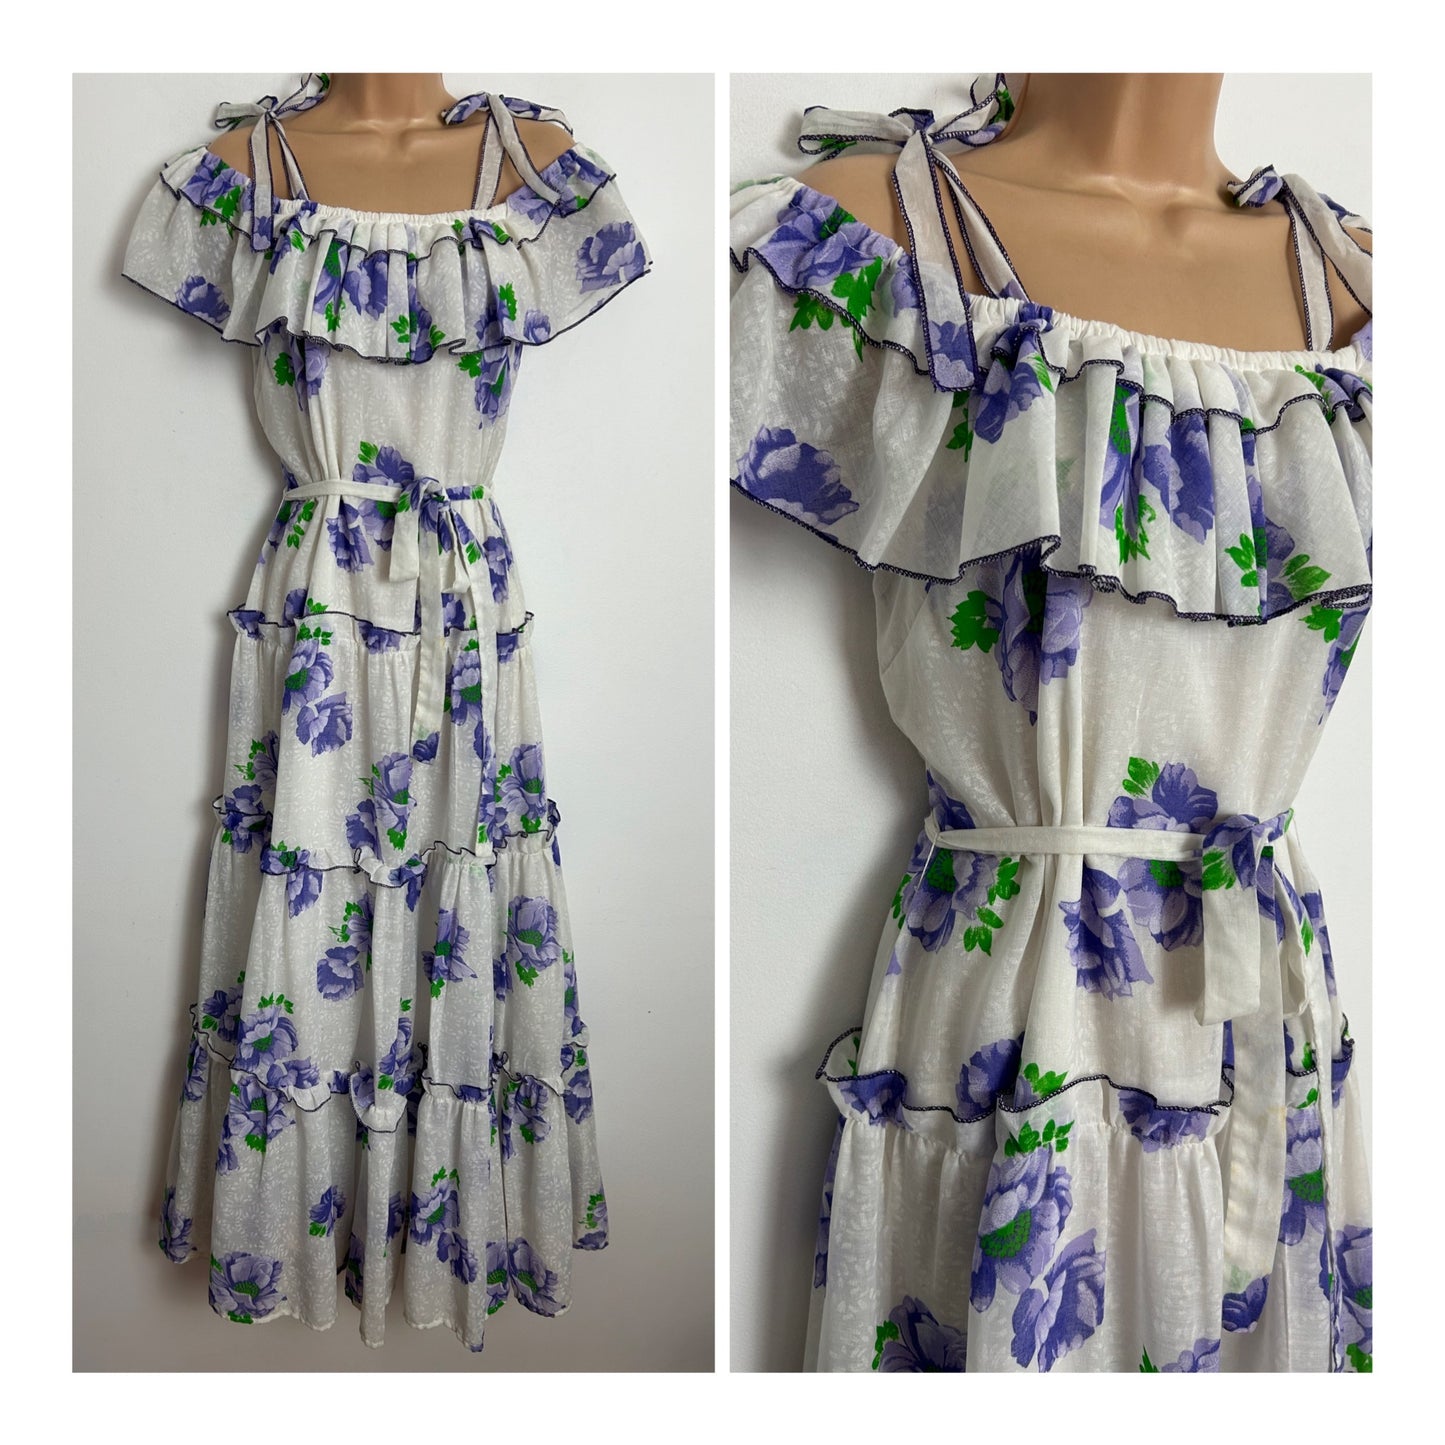 Vintage 1970s UK Size 6 Pretty White & Violet Floral Print Bardot Tie Shoulder Belted Boho Summer Maxi Dress